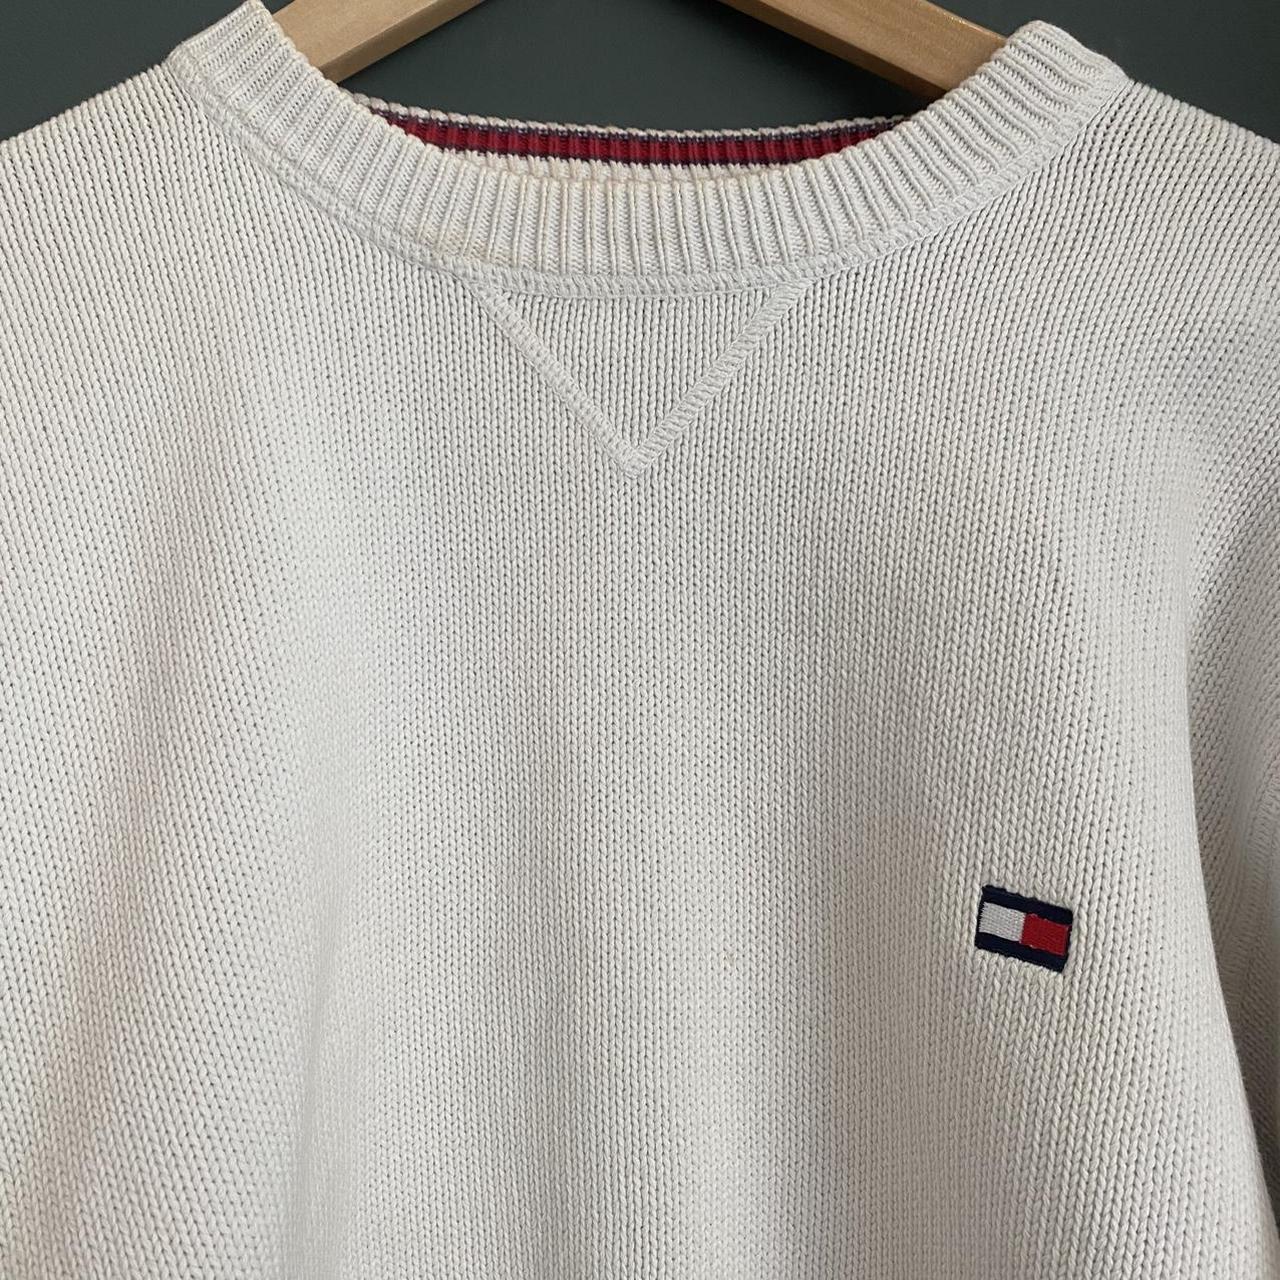 Vintage Tommy Hilfiger reworked jumper | cropped |... - Depop